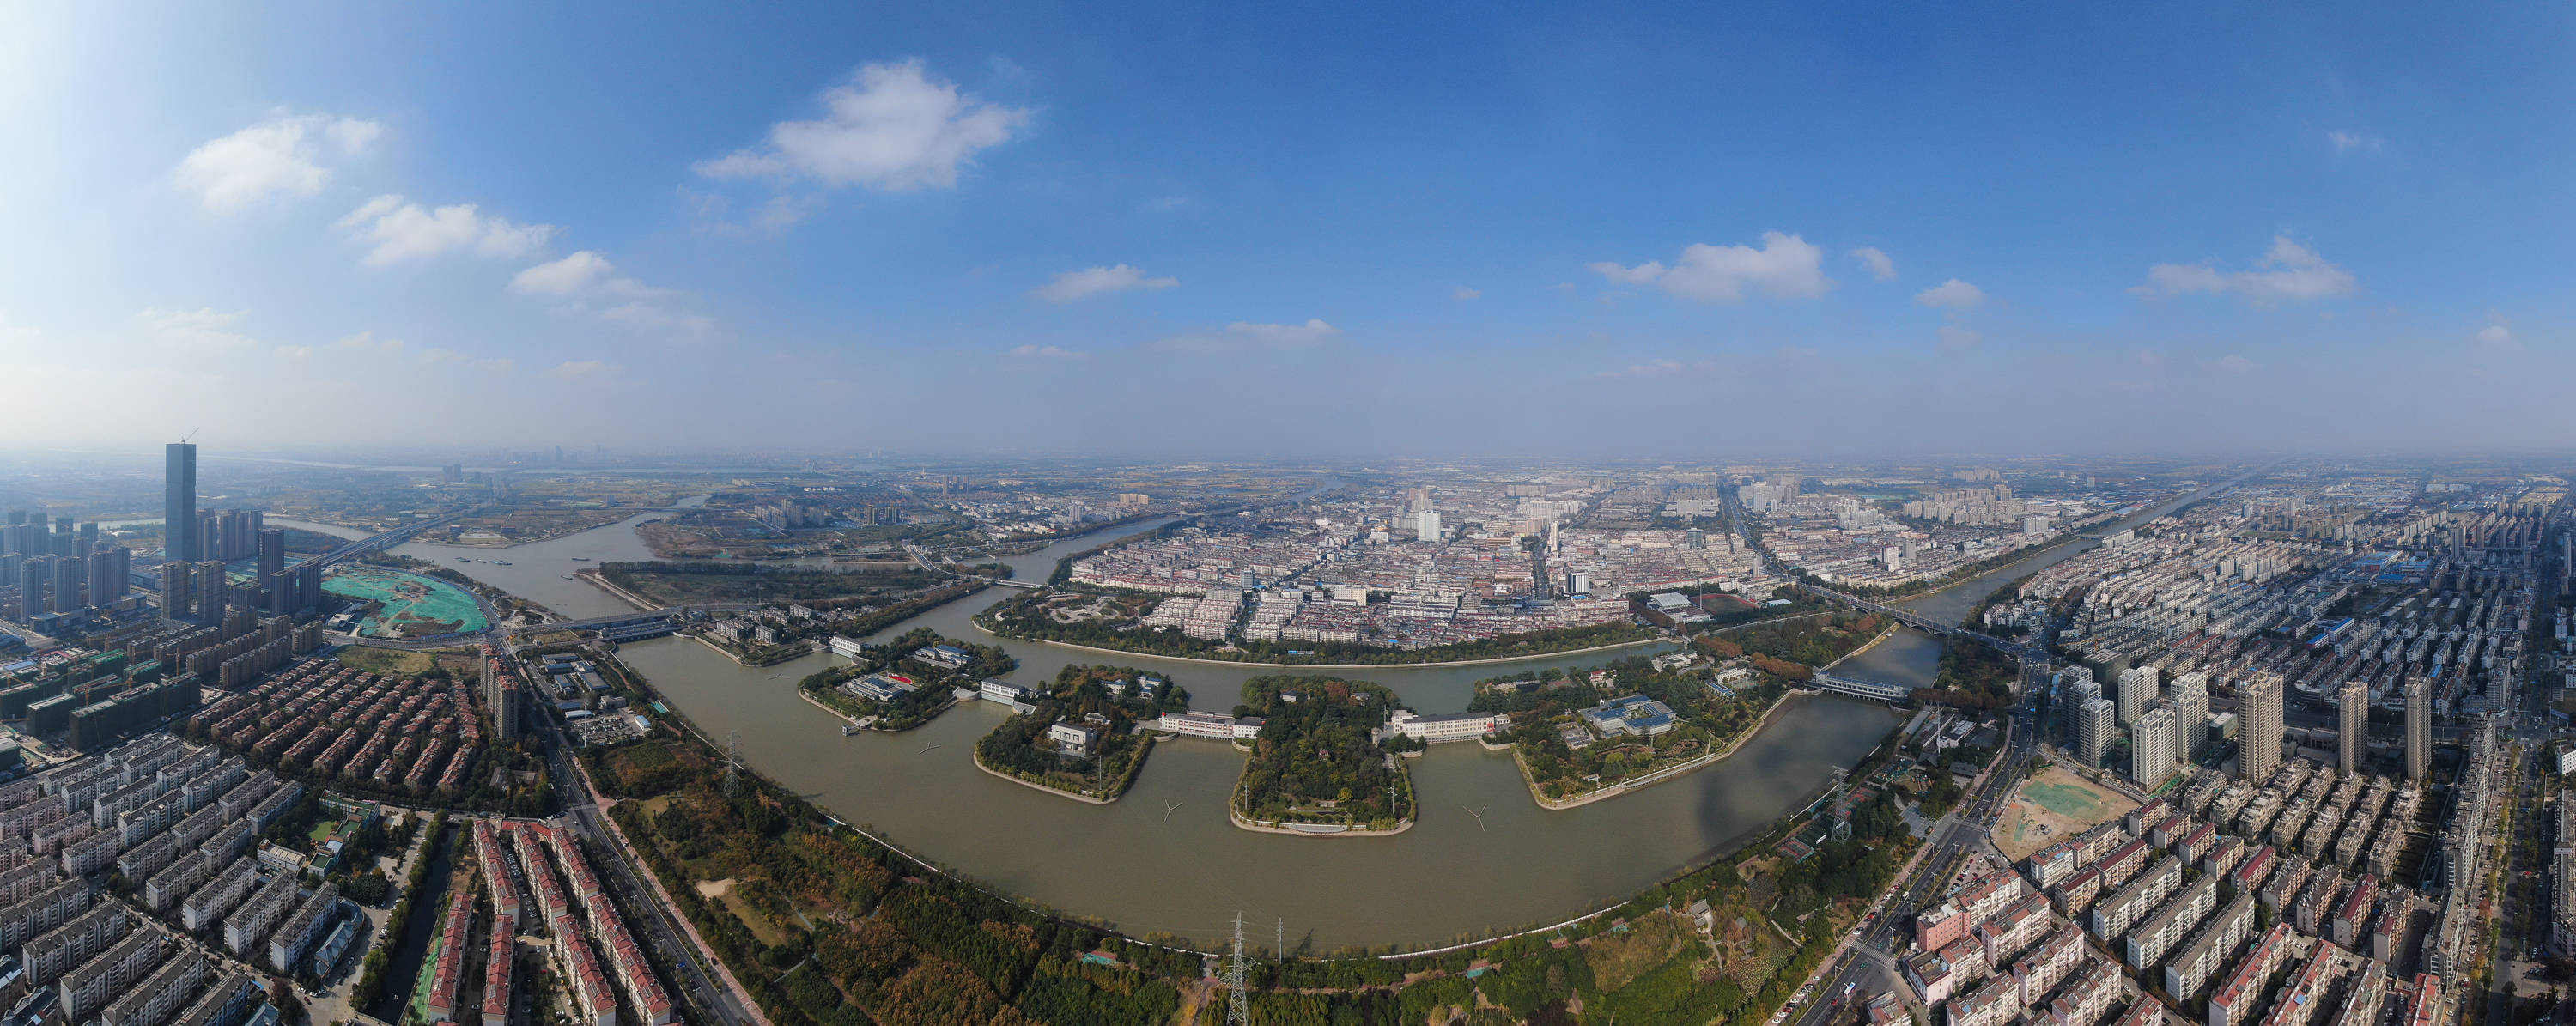 这是11月14日拍摄的位于江苏省扬州市的江都水利枢纽(无人机全景照片)